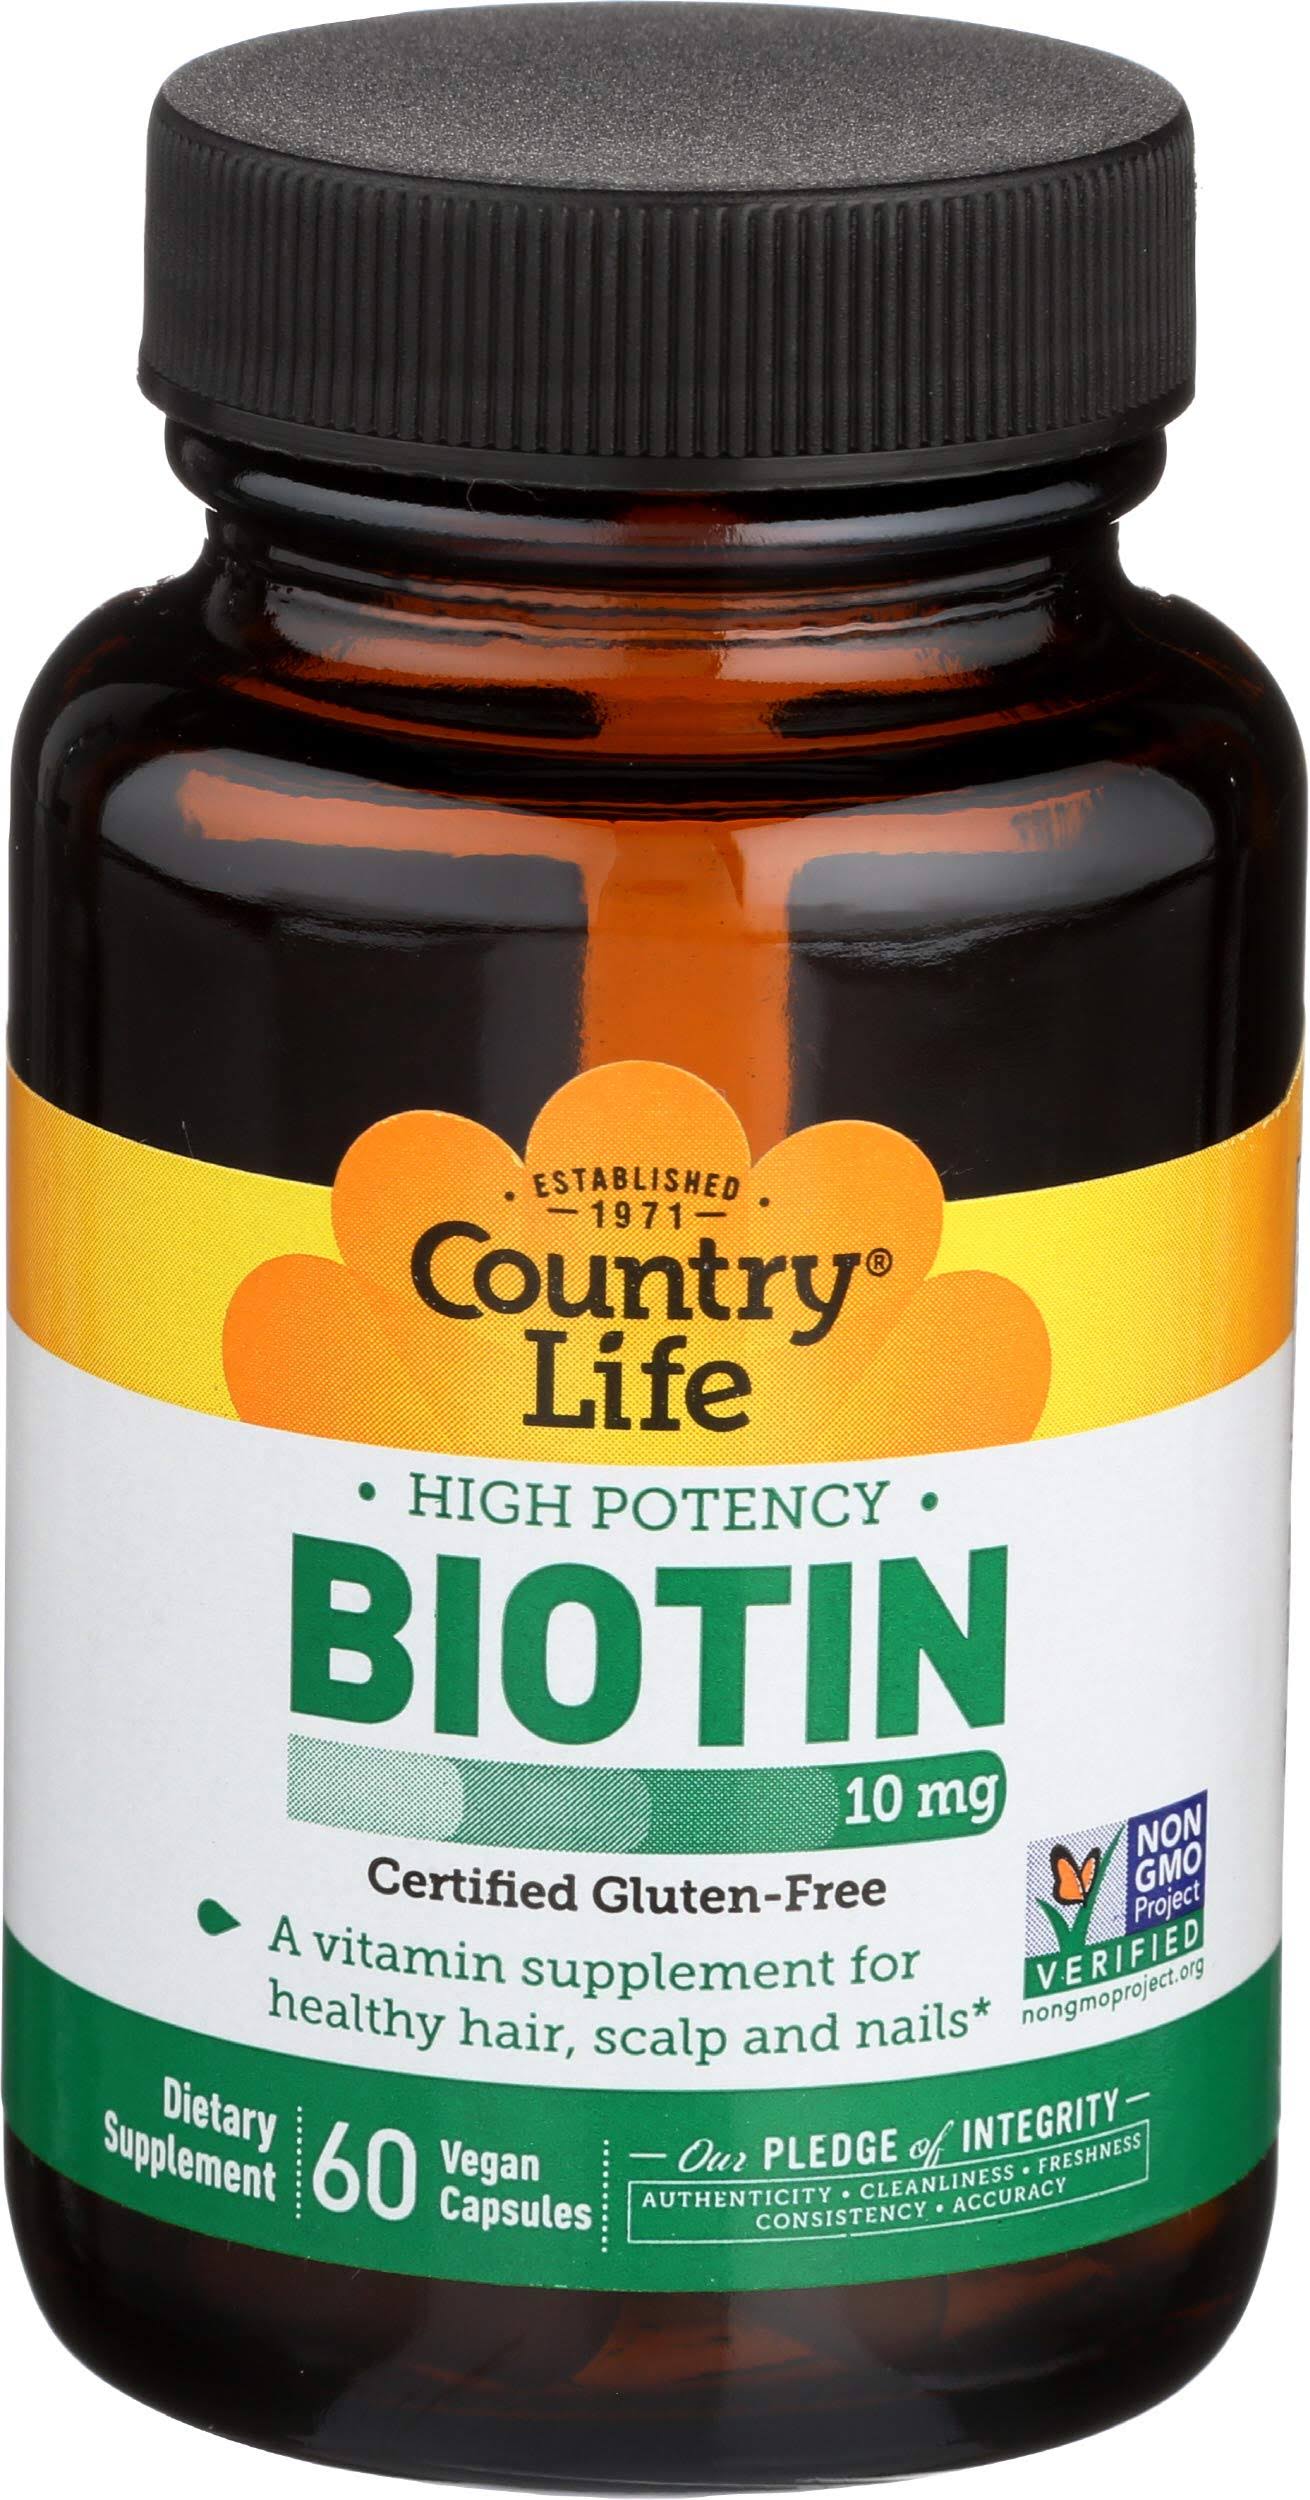 Country Life Biotin - 10mg, 60 Vegetarian Capsules